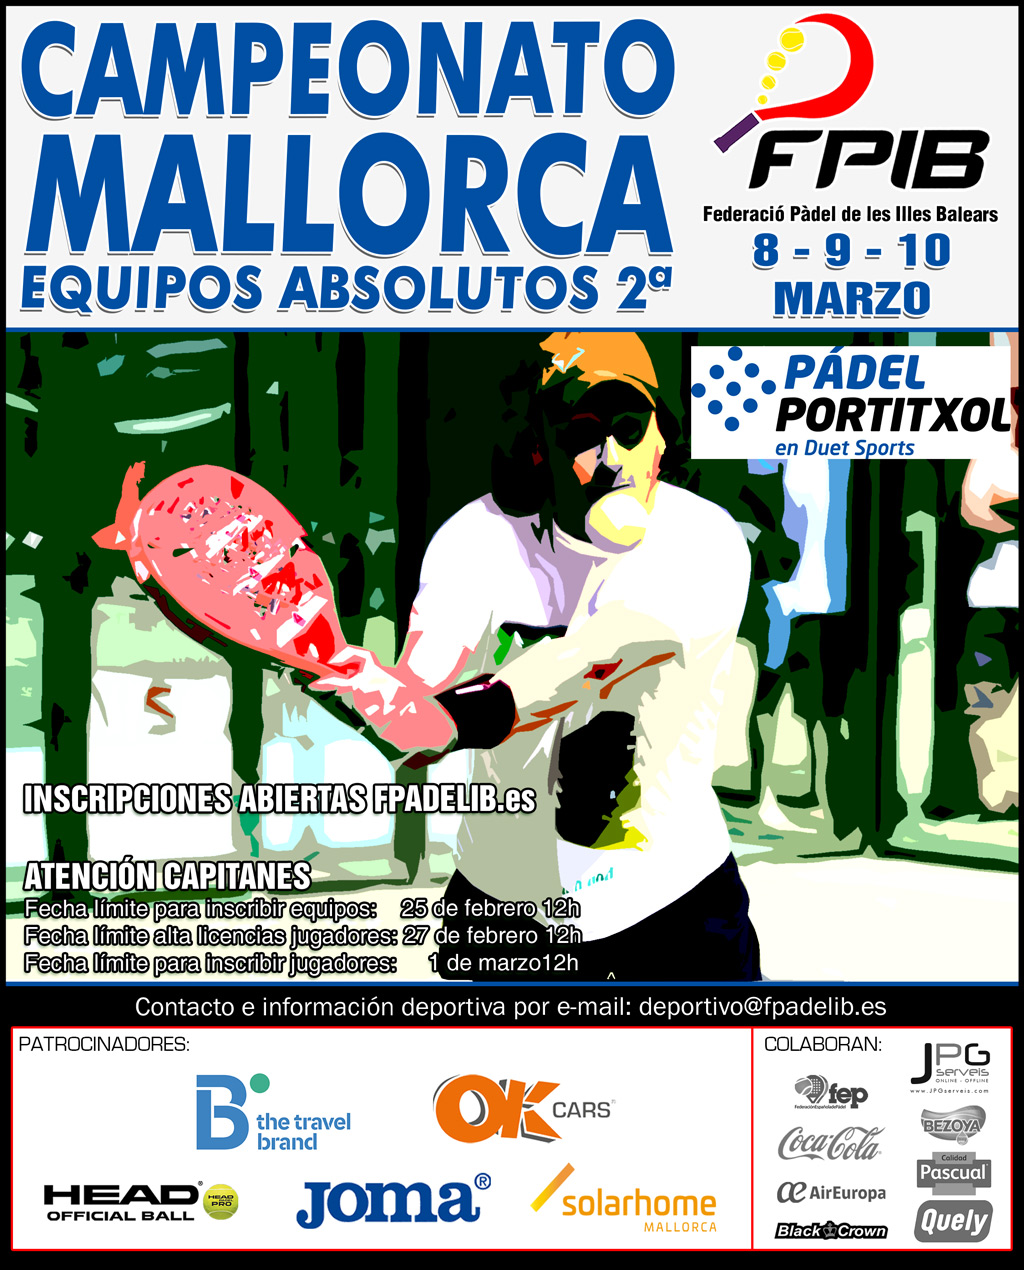 2019 Camp Mallorca Equipos Absolutos 2a